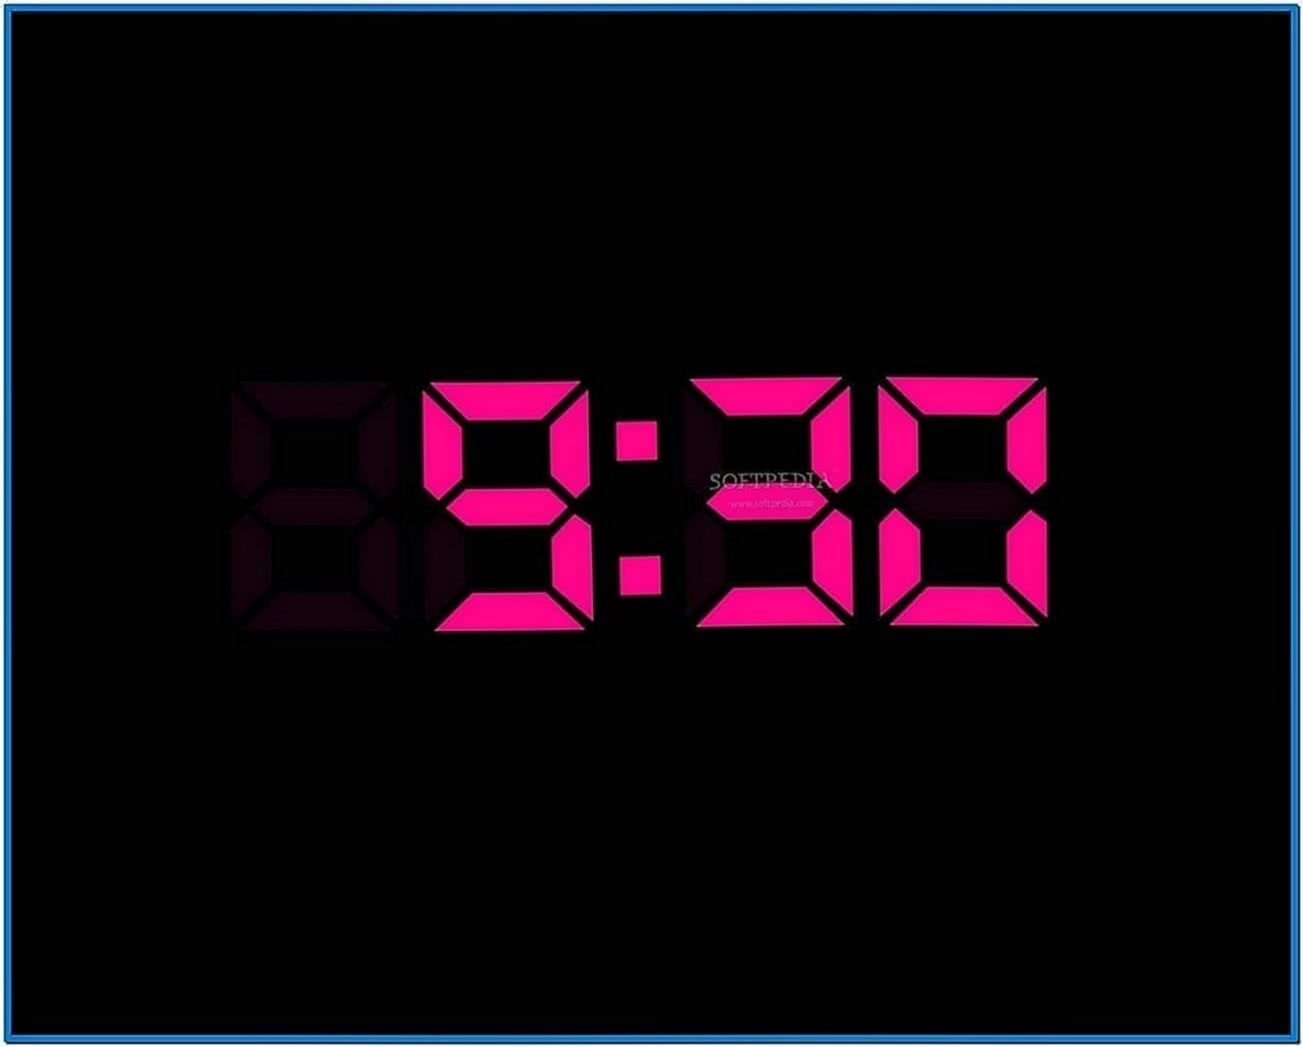 Digital clock screensaver for desktop - Download free